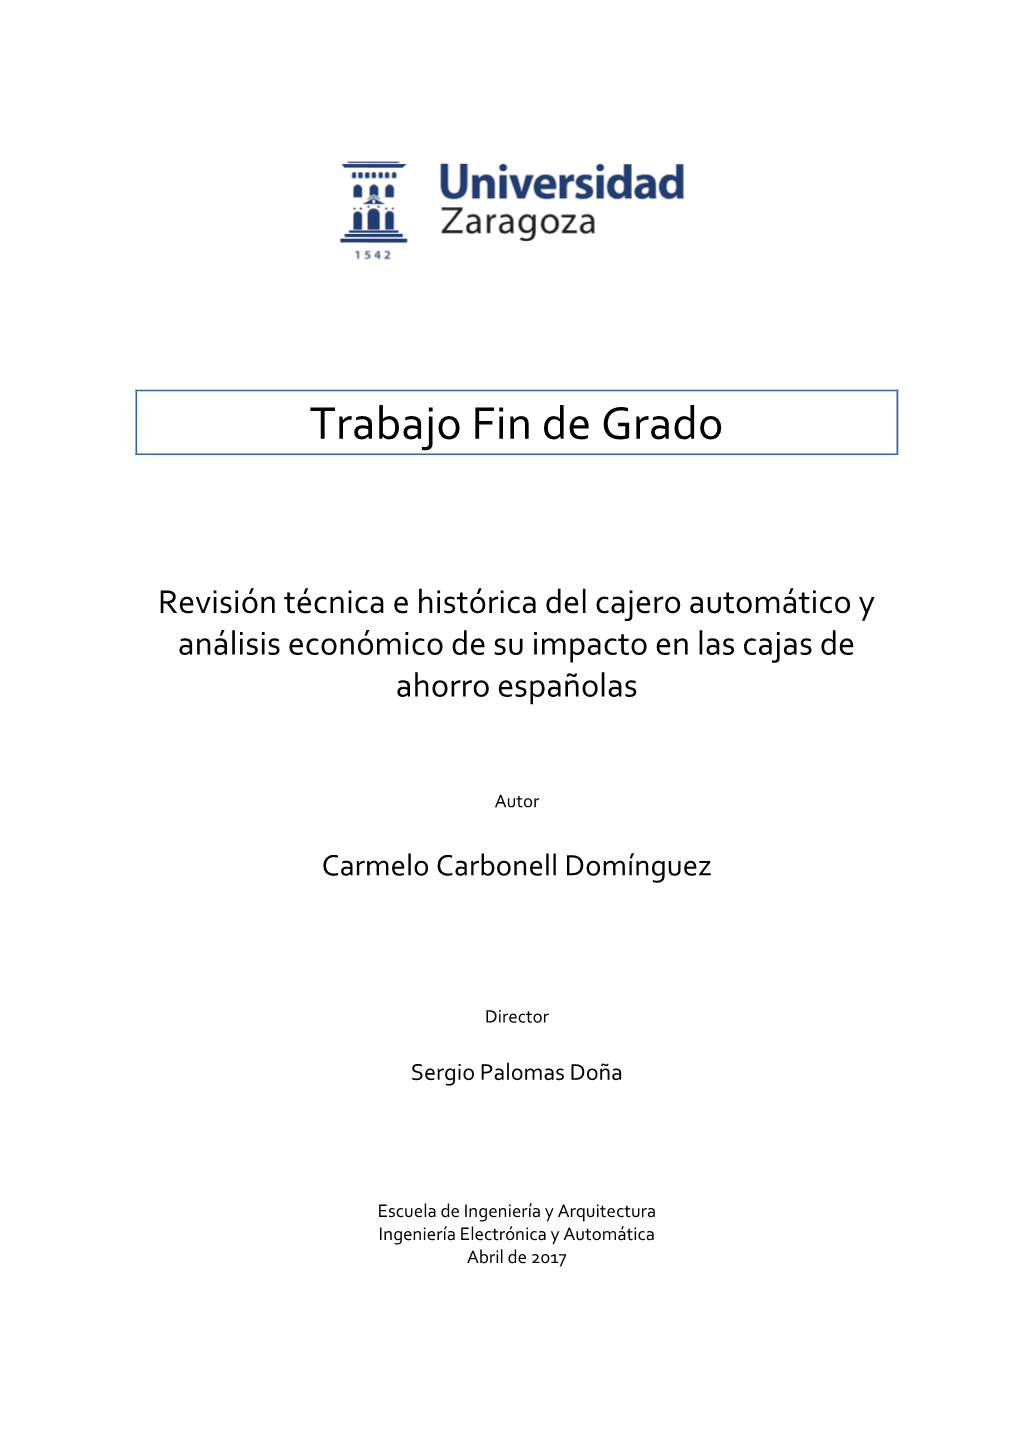 Revisión Técnica E Histórica Del Cajero Automático Y Análisis Económico De Su Impacto En Las Cajas De Ahorro Españolas